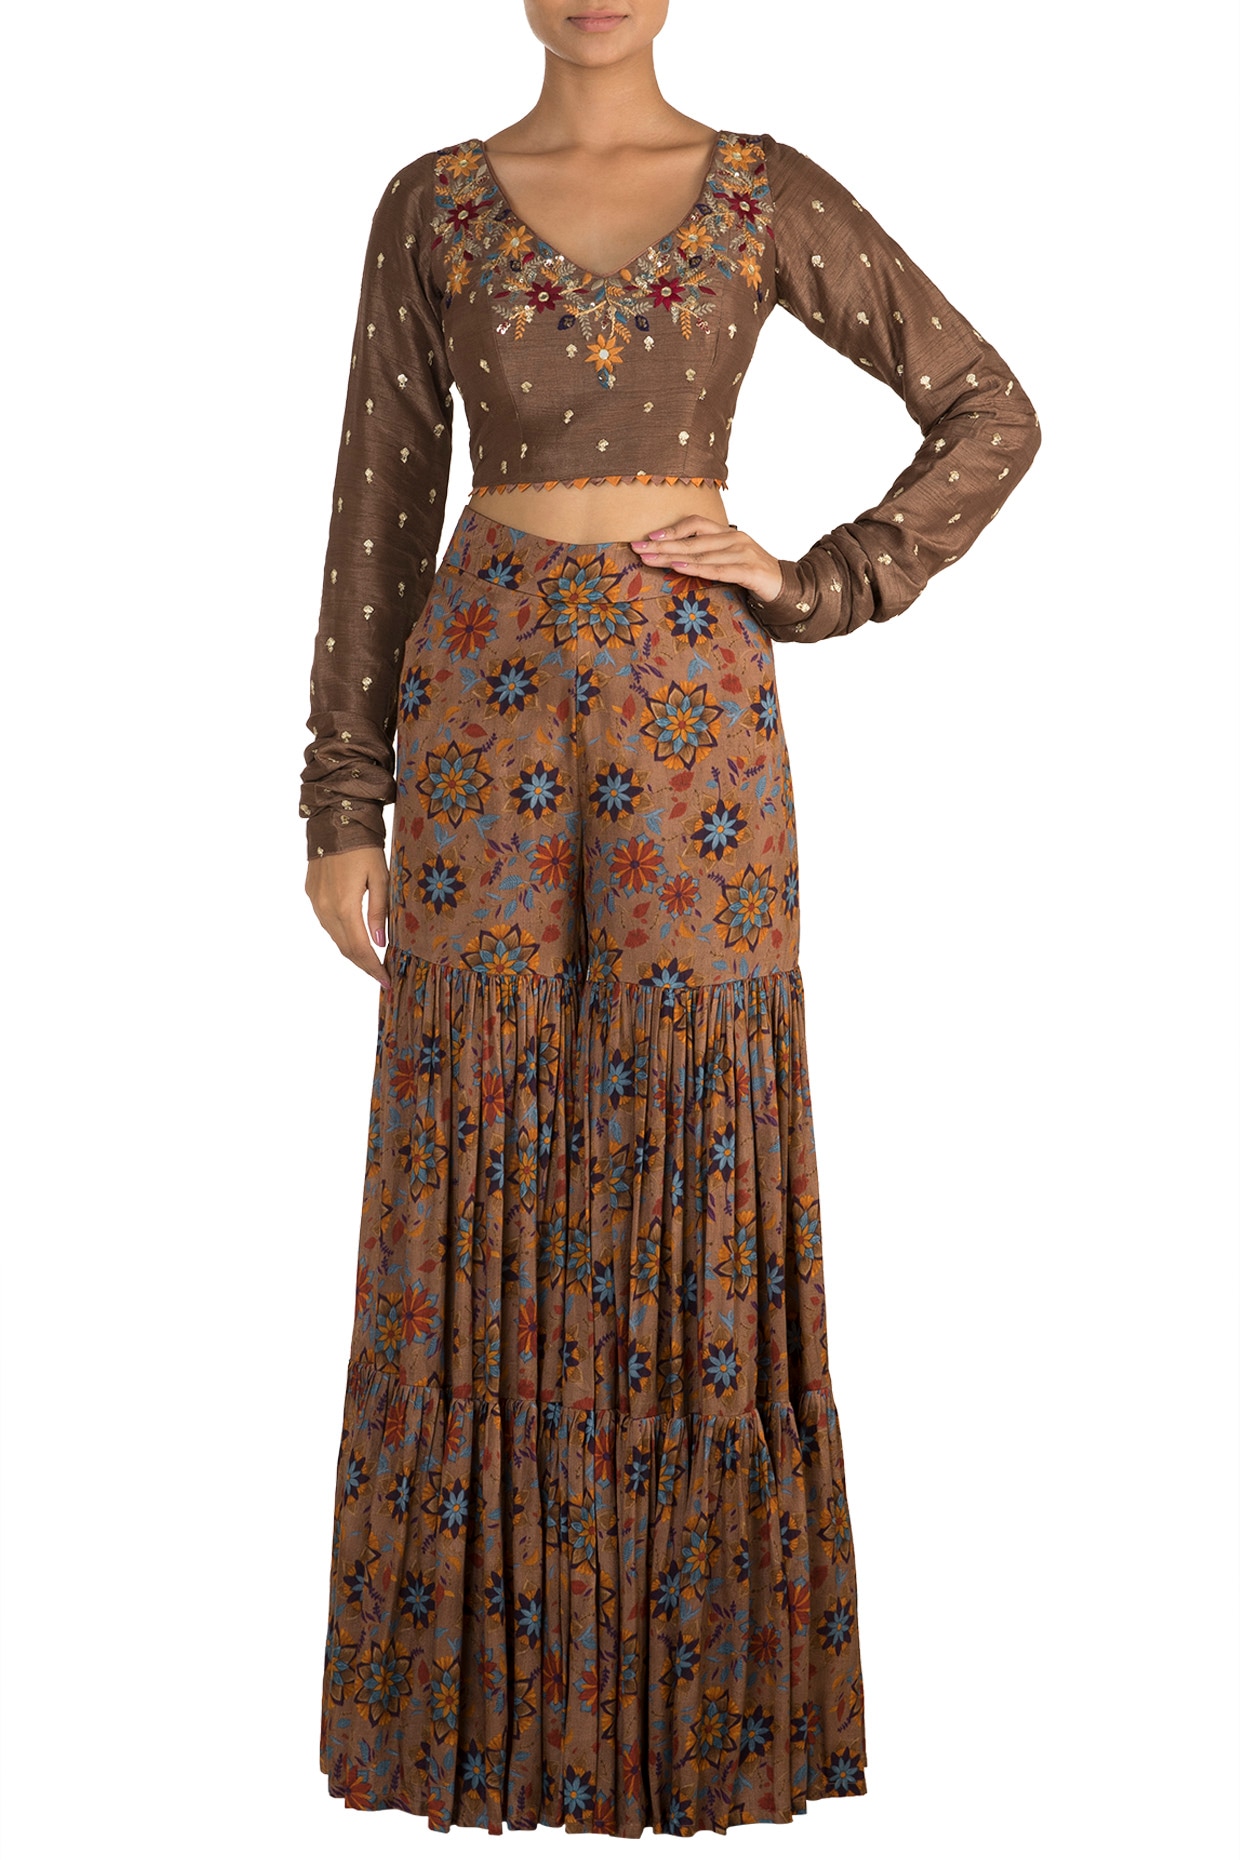 sharara dress with crop top